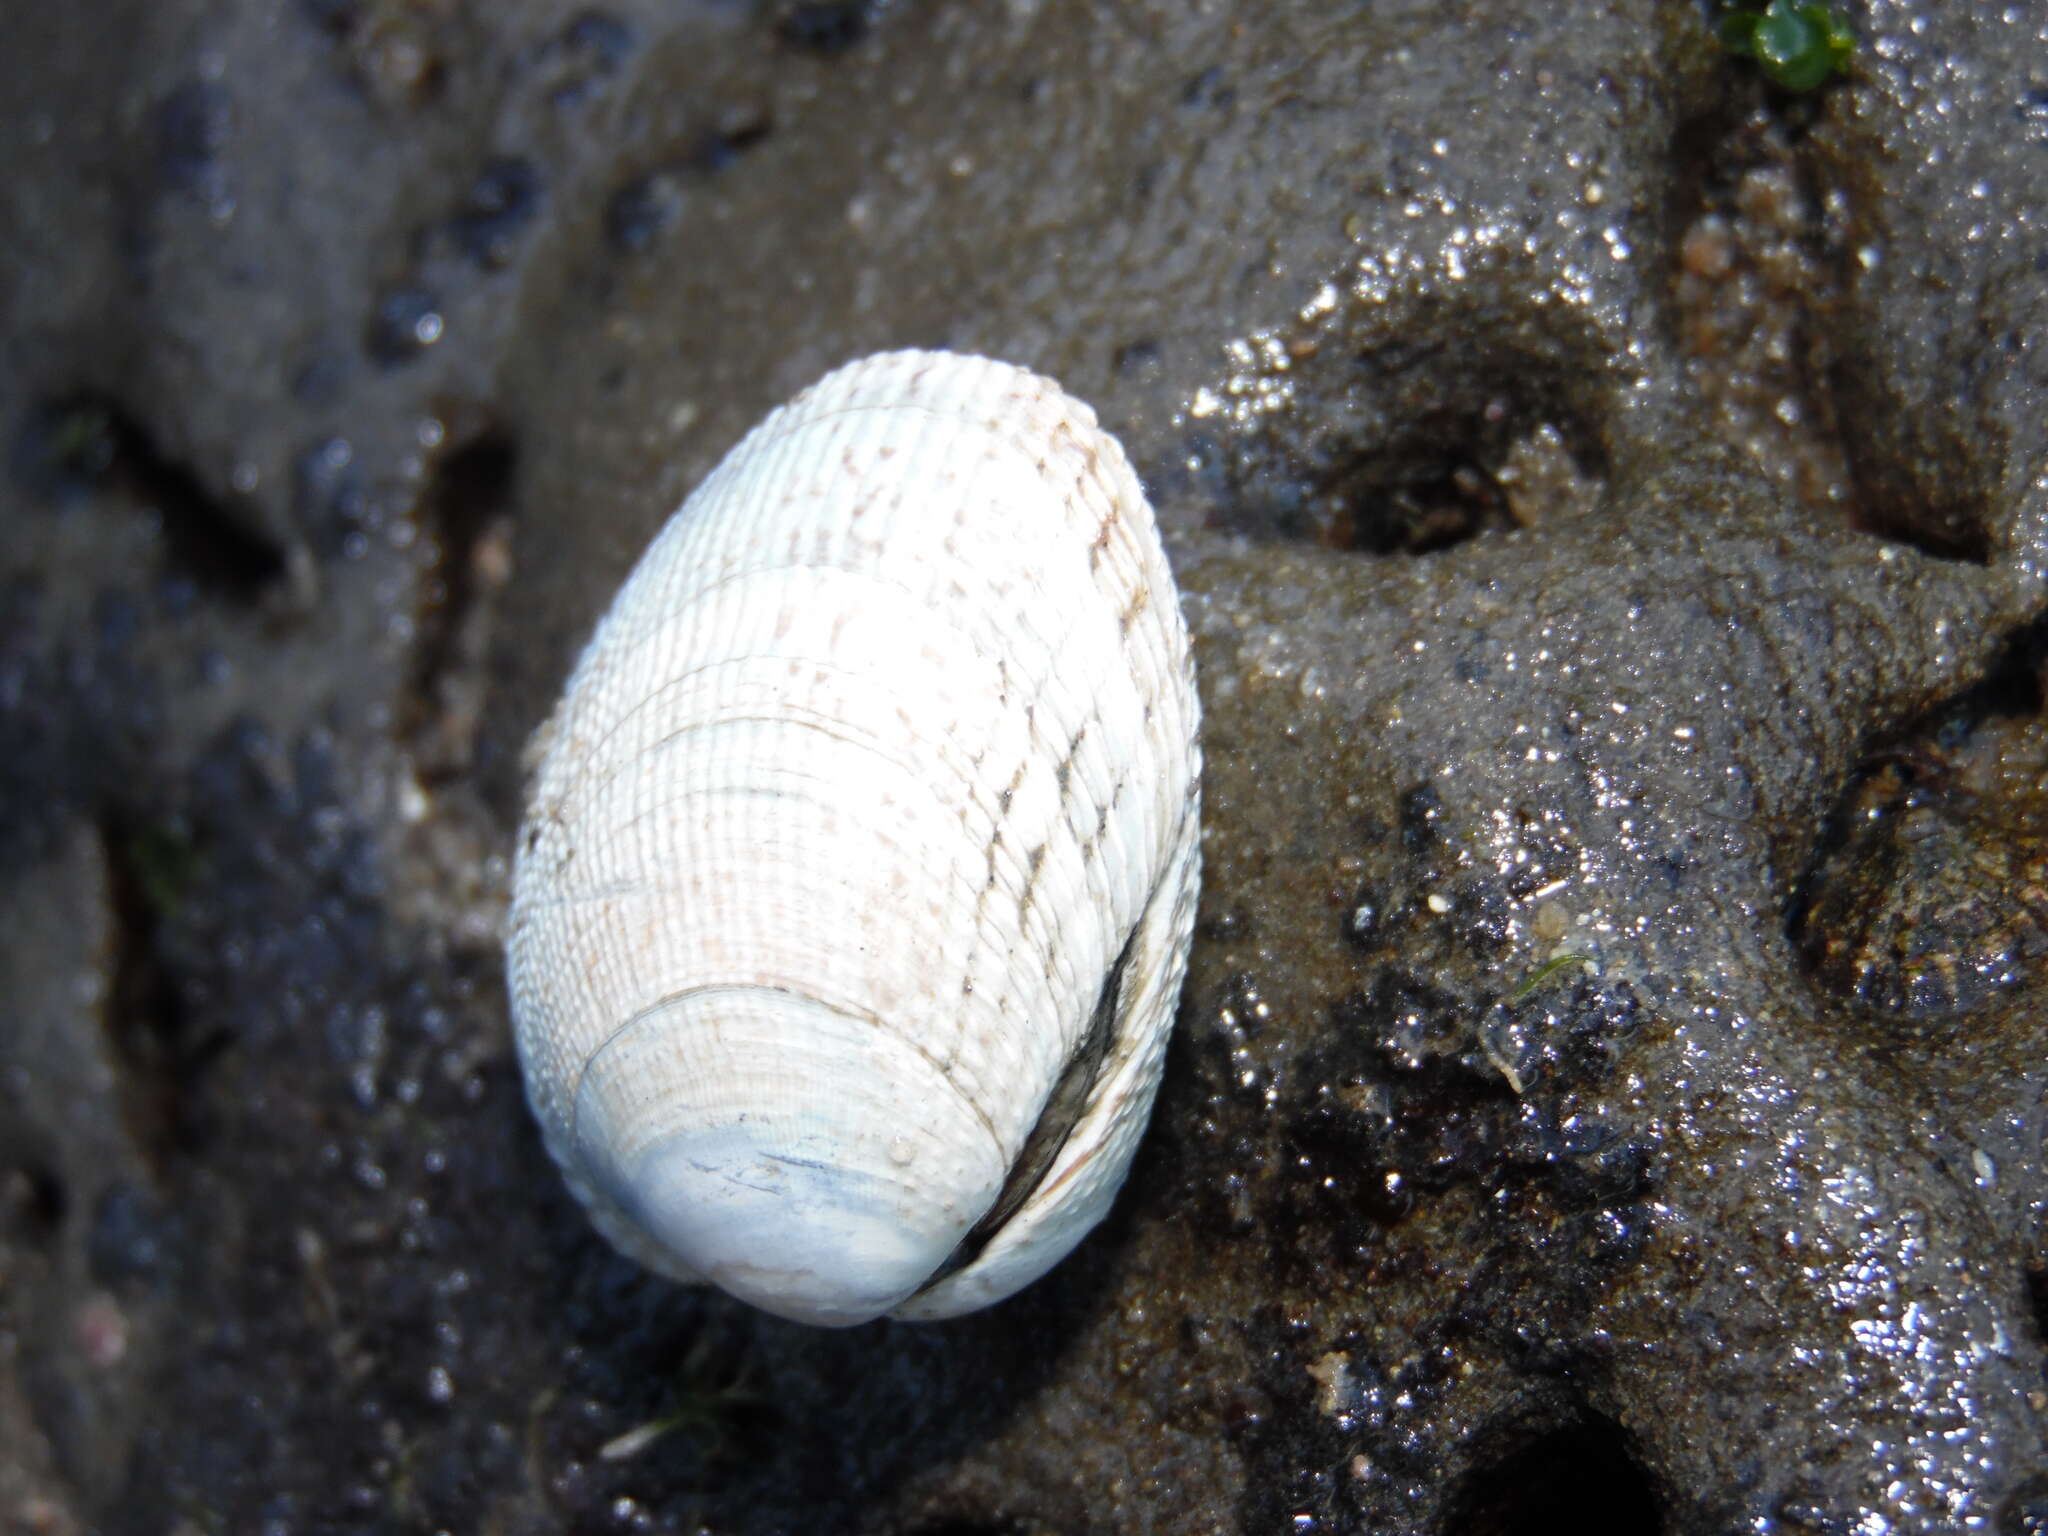 Image of Taca clam